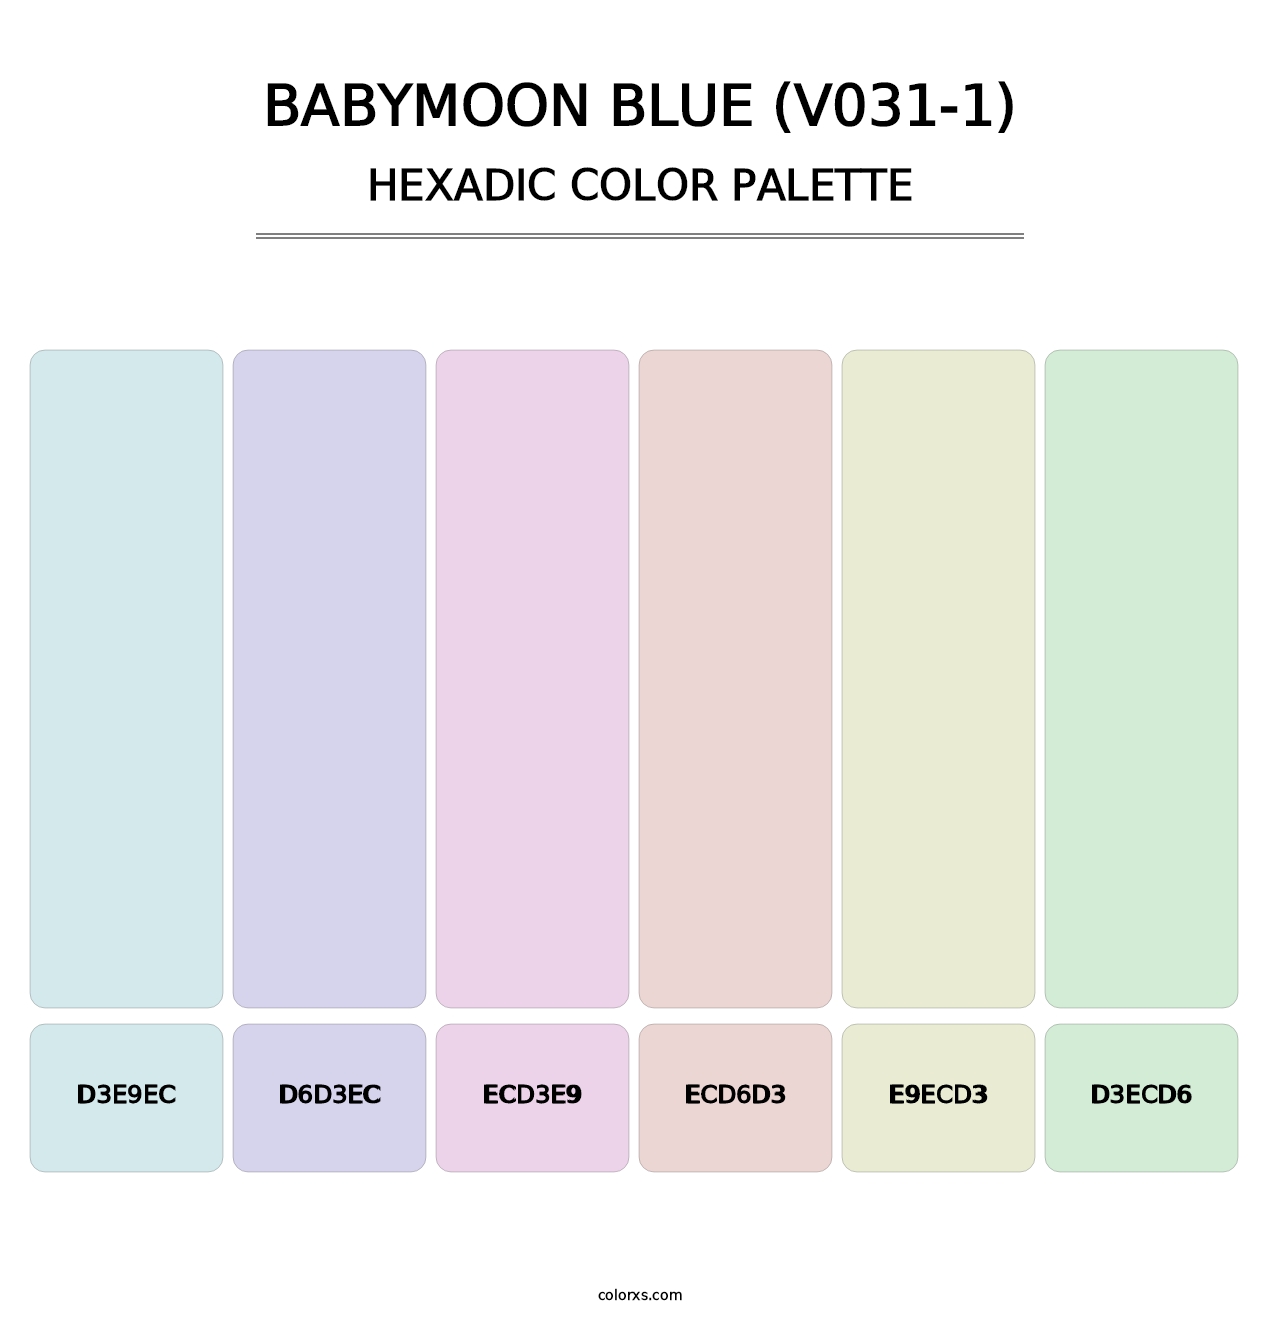 Babymoon Blue (V031-1) - Hexadic Color Palette